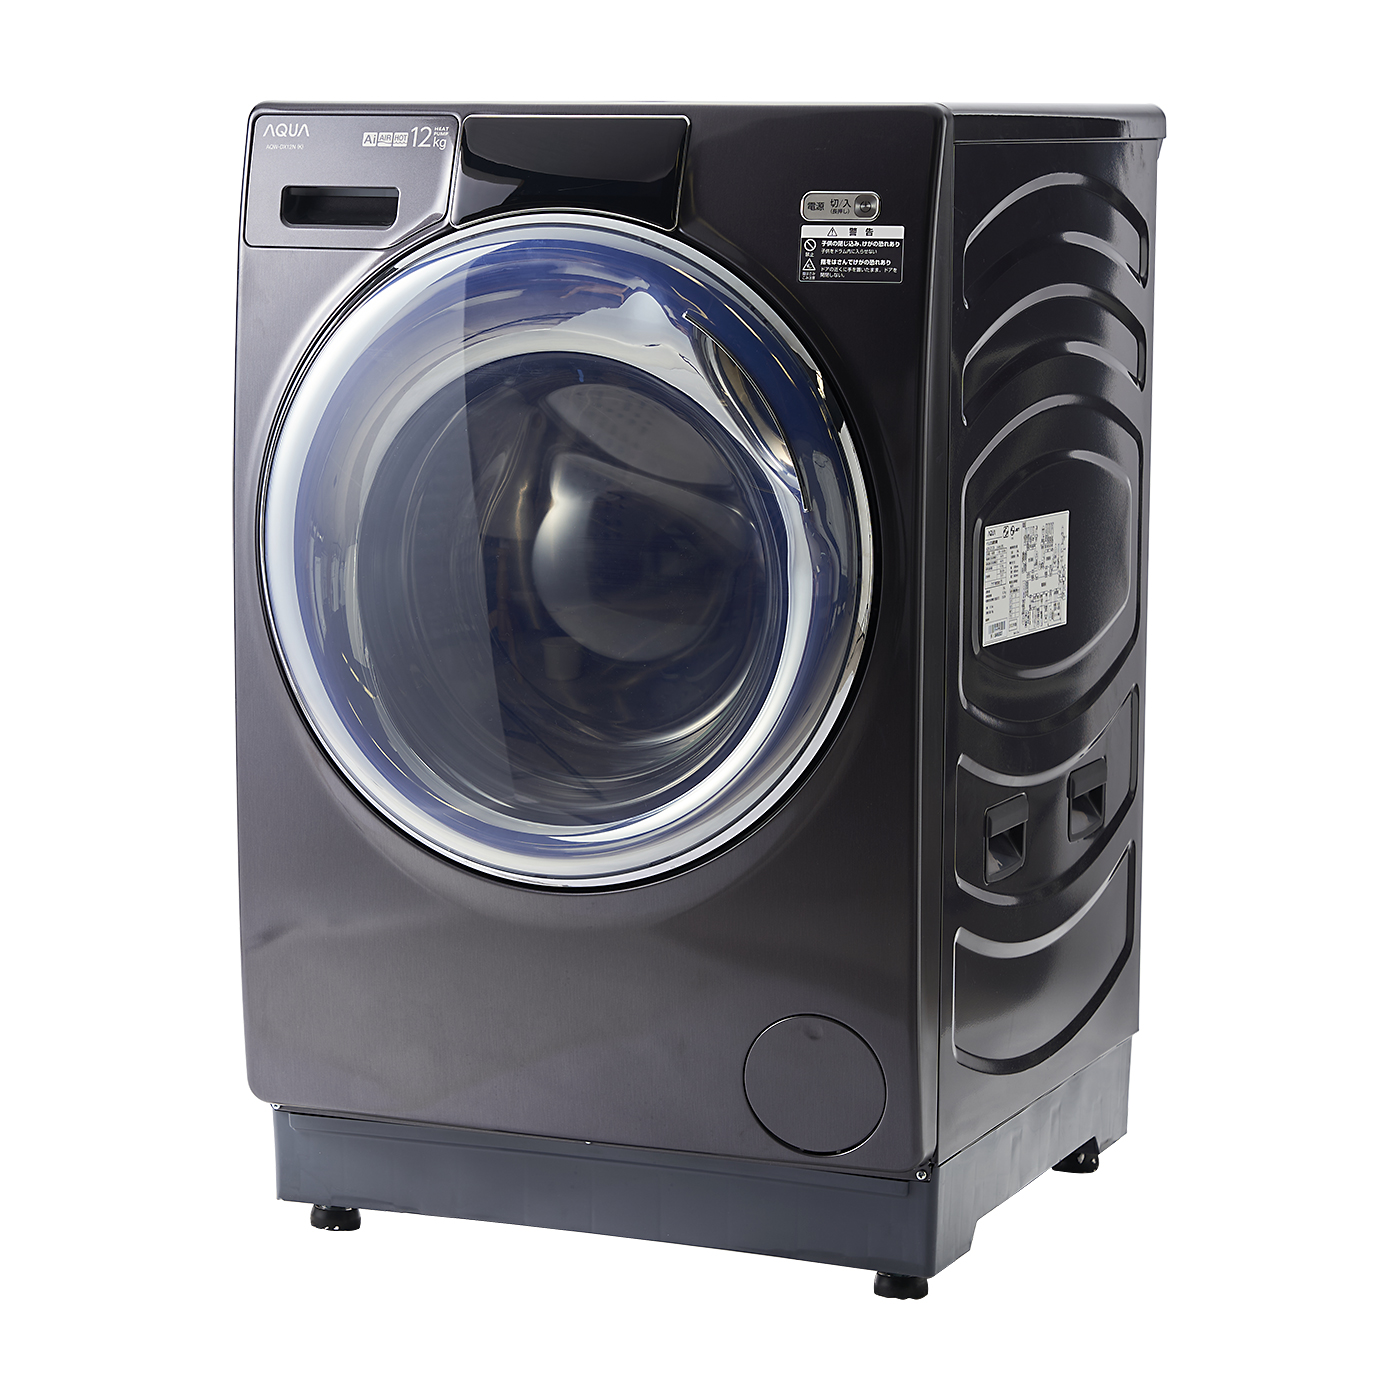 直売割ドラム式洗濯乾燥機 AQUA 電気 ドラム式洗濯機 2012年製 格安売り切りスタートsvr 直接取引大歓迎 ドラム式